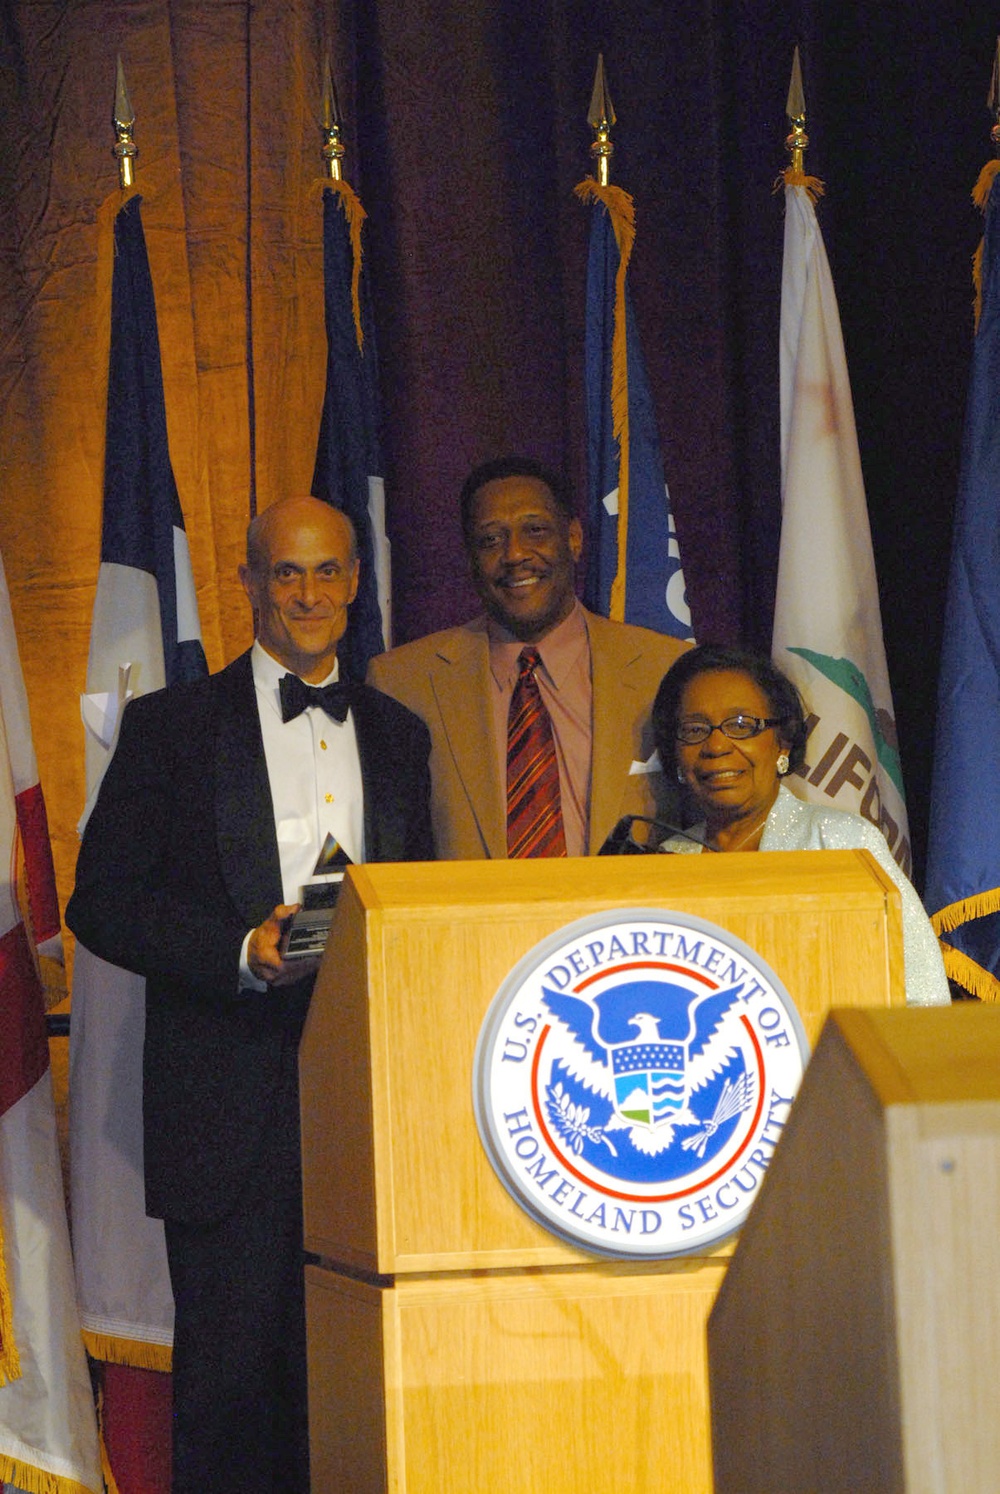 DHS receives award